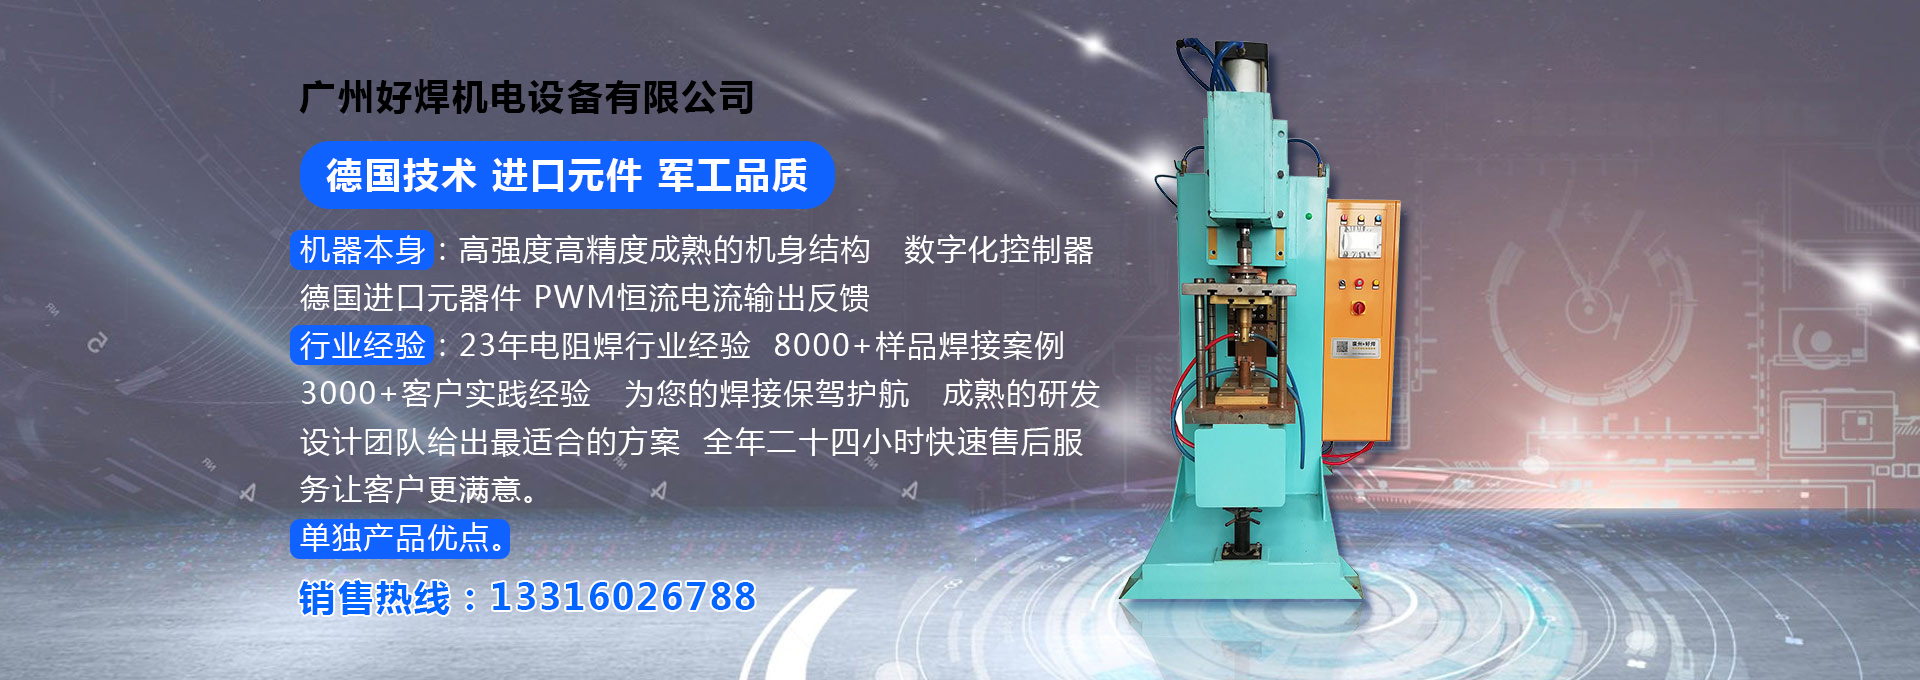 廣州好焊機電設備有限公司